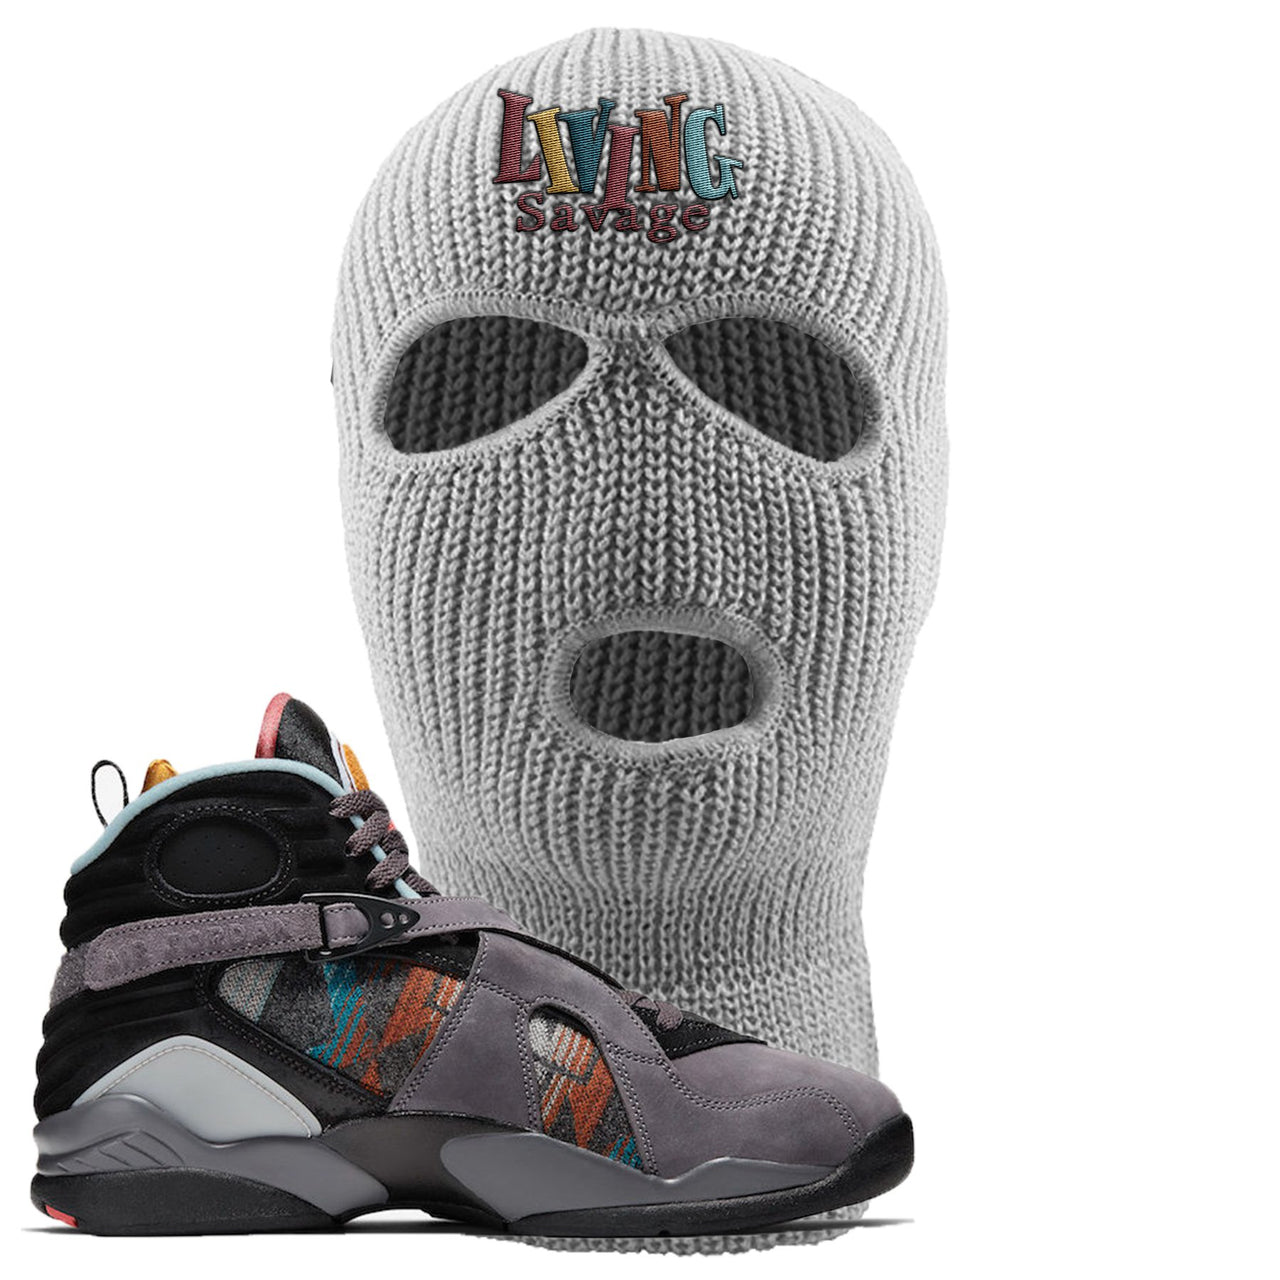 Jordan 8 N7 Pendleton Living Savage Light Gray Sneaker Hook Up Ski Mask